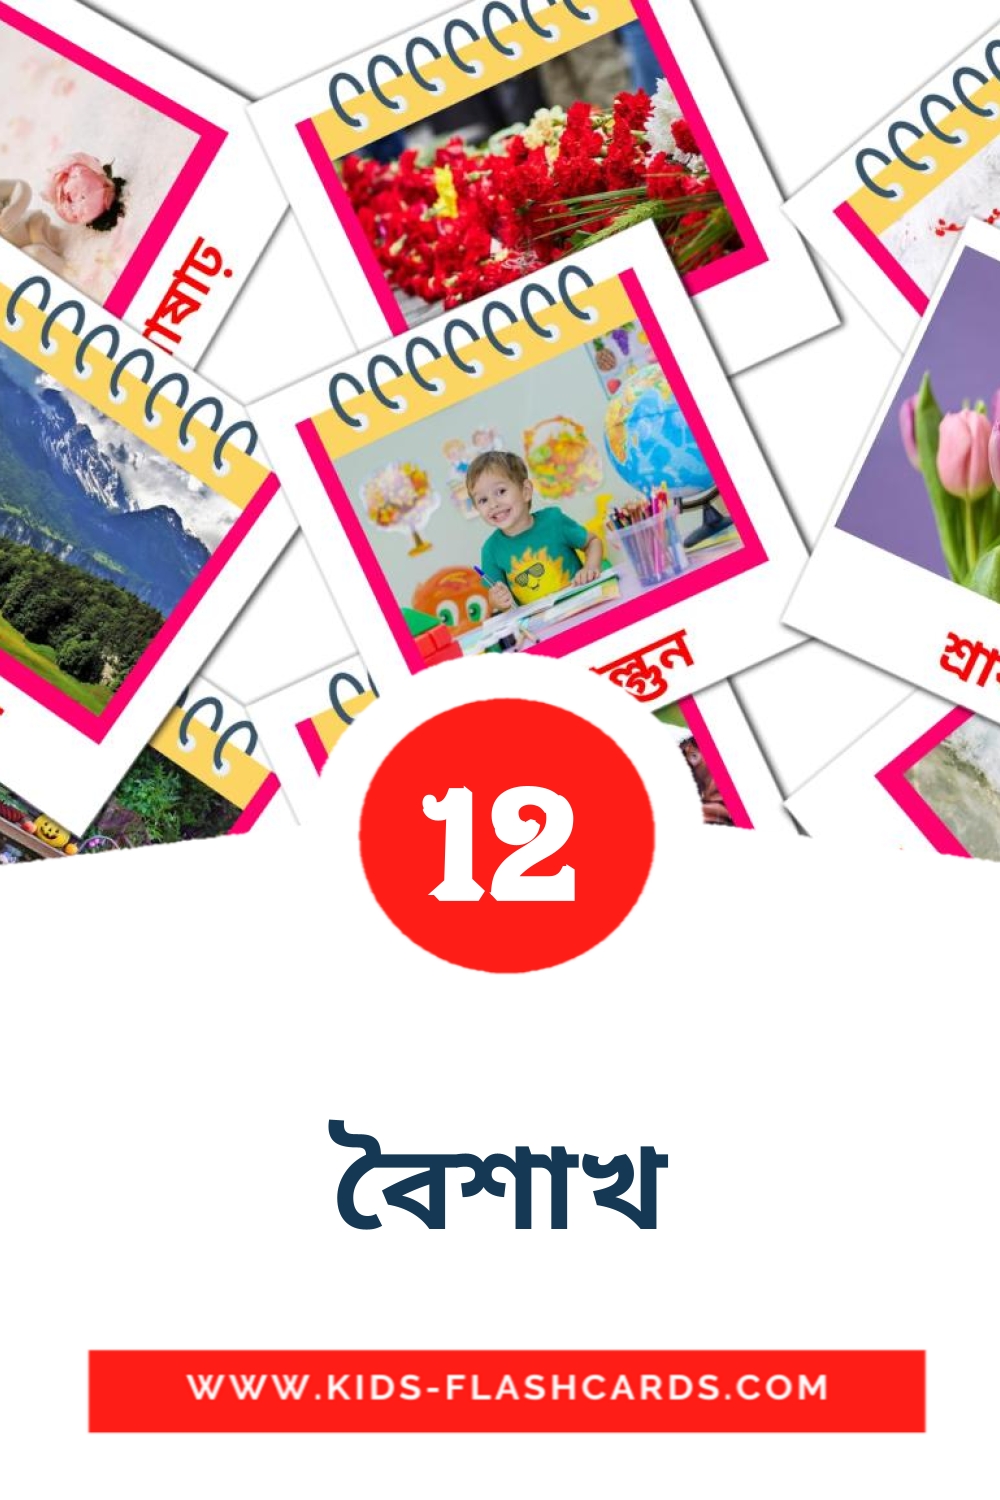 12 cartes illustrées de বৈশাখ pour la maternelle en bengali